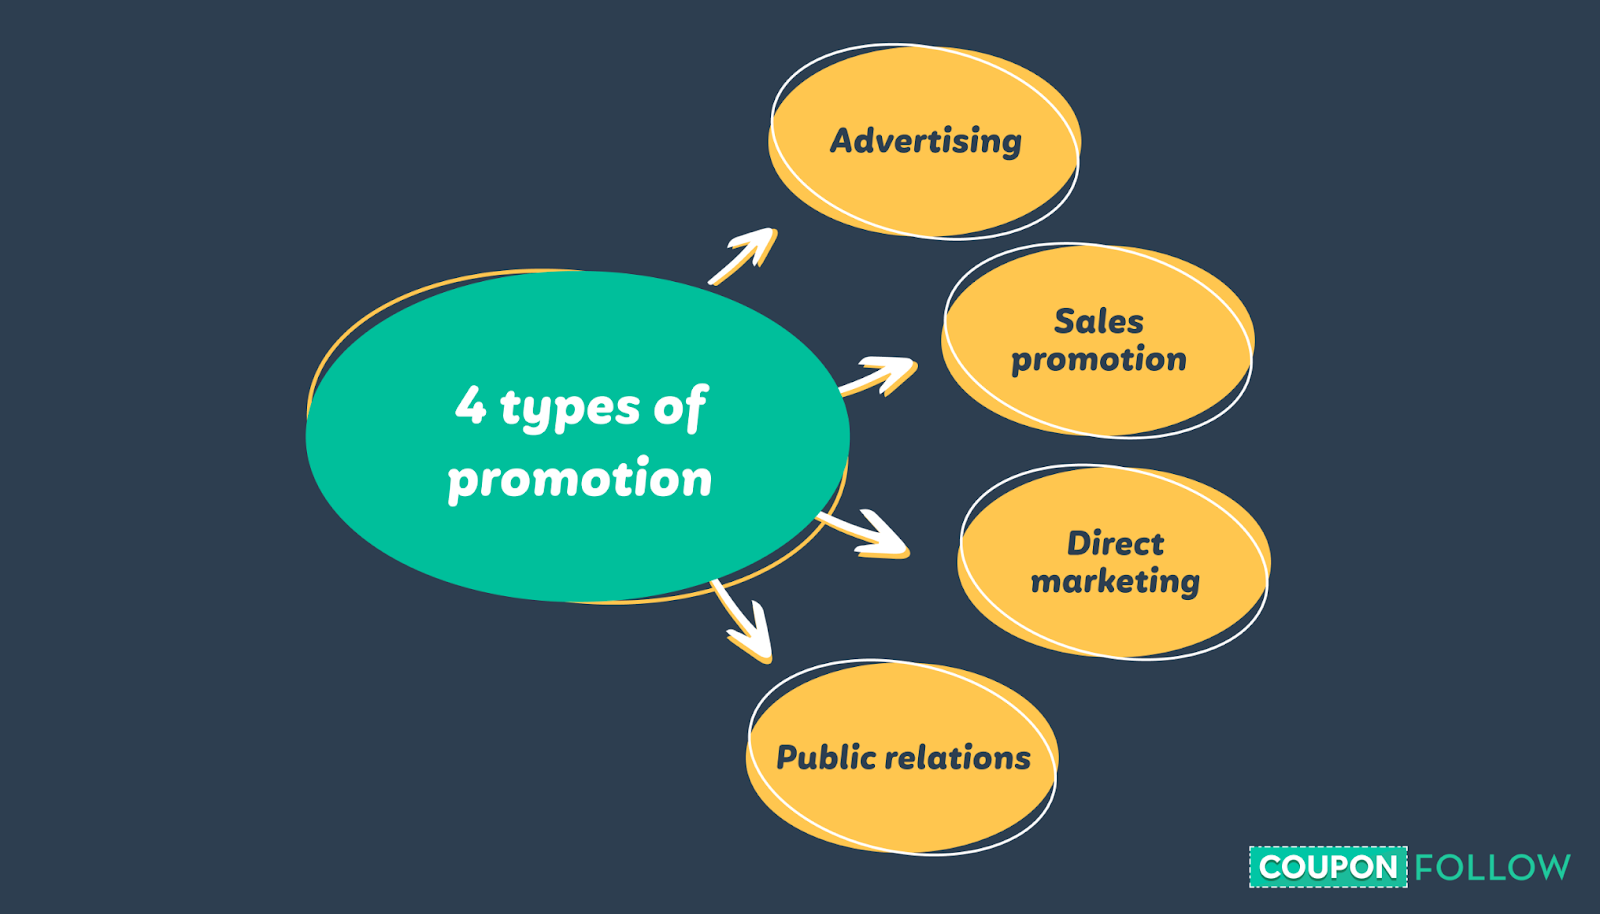 O que são 4 tipos de promoção?